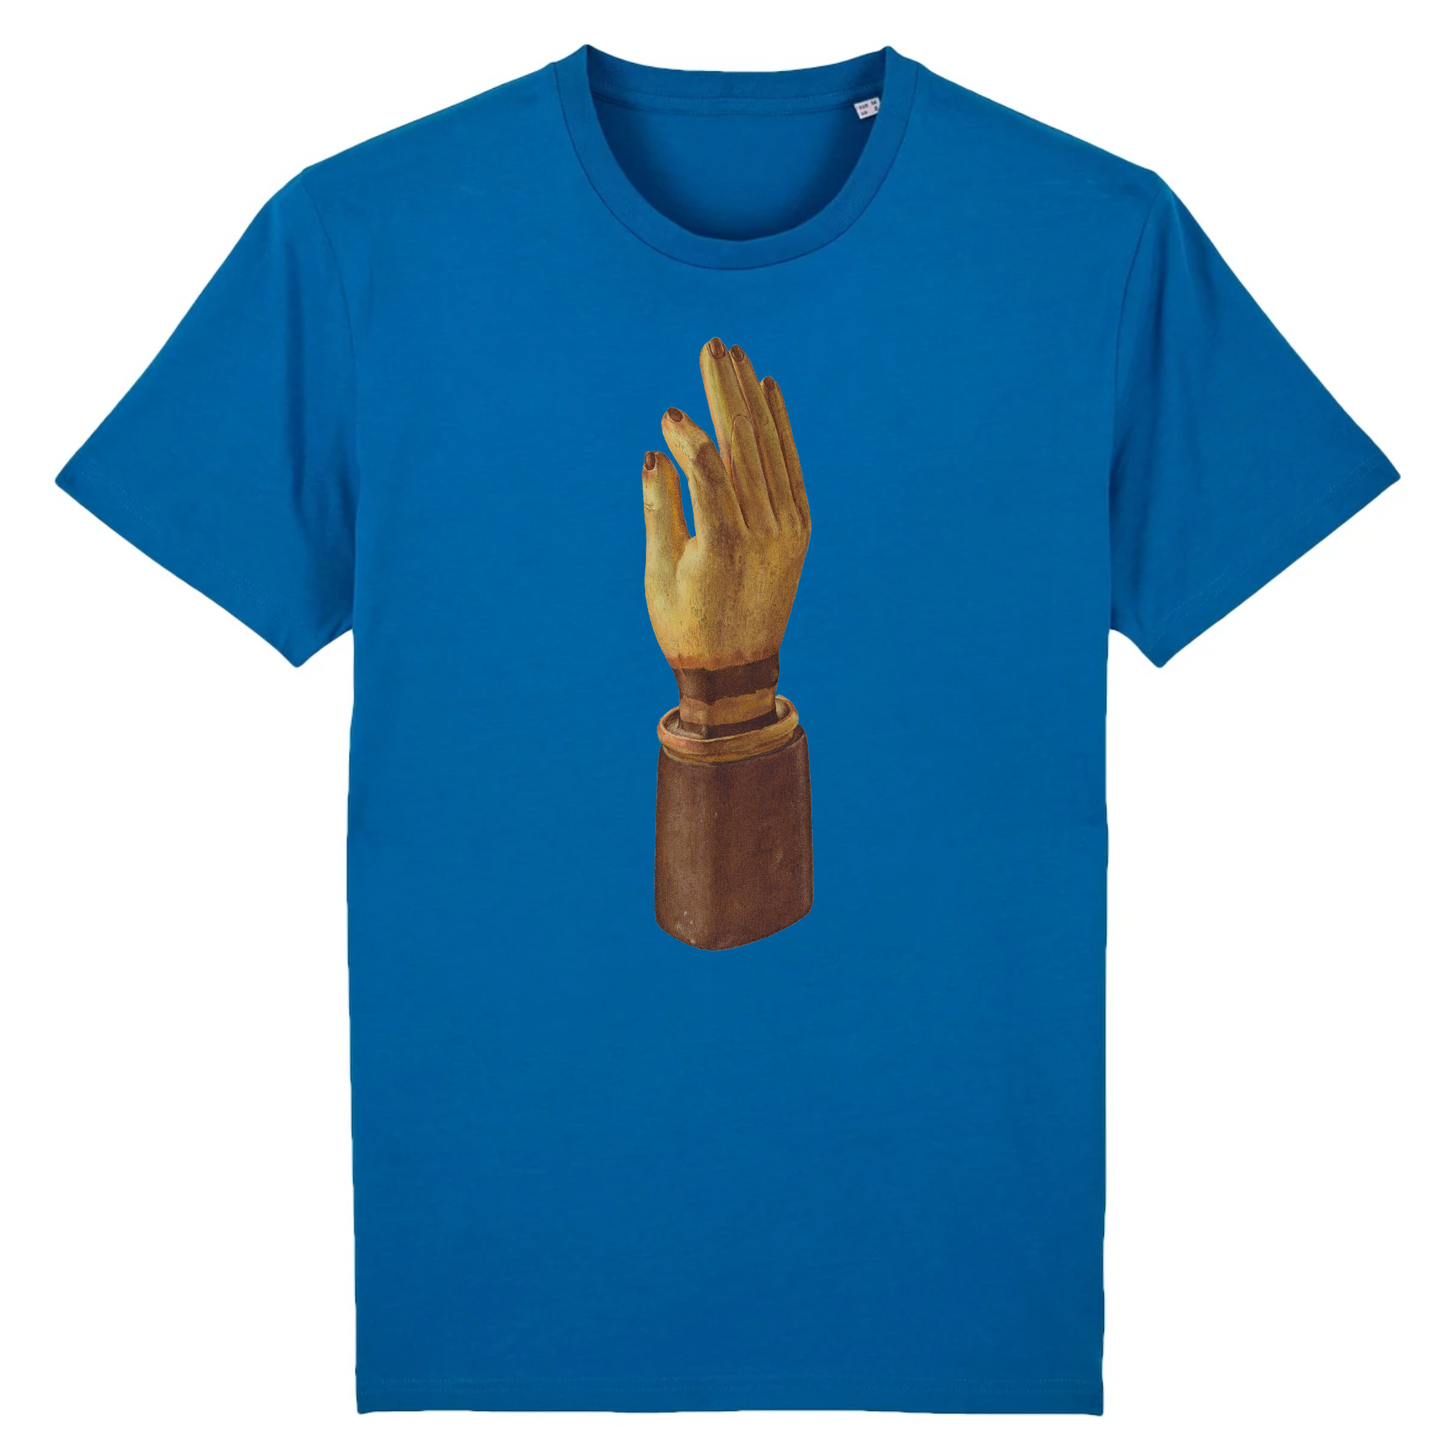 Robert Calvin Hand Glove, c.1938 - Organic Cotton T-Shirt